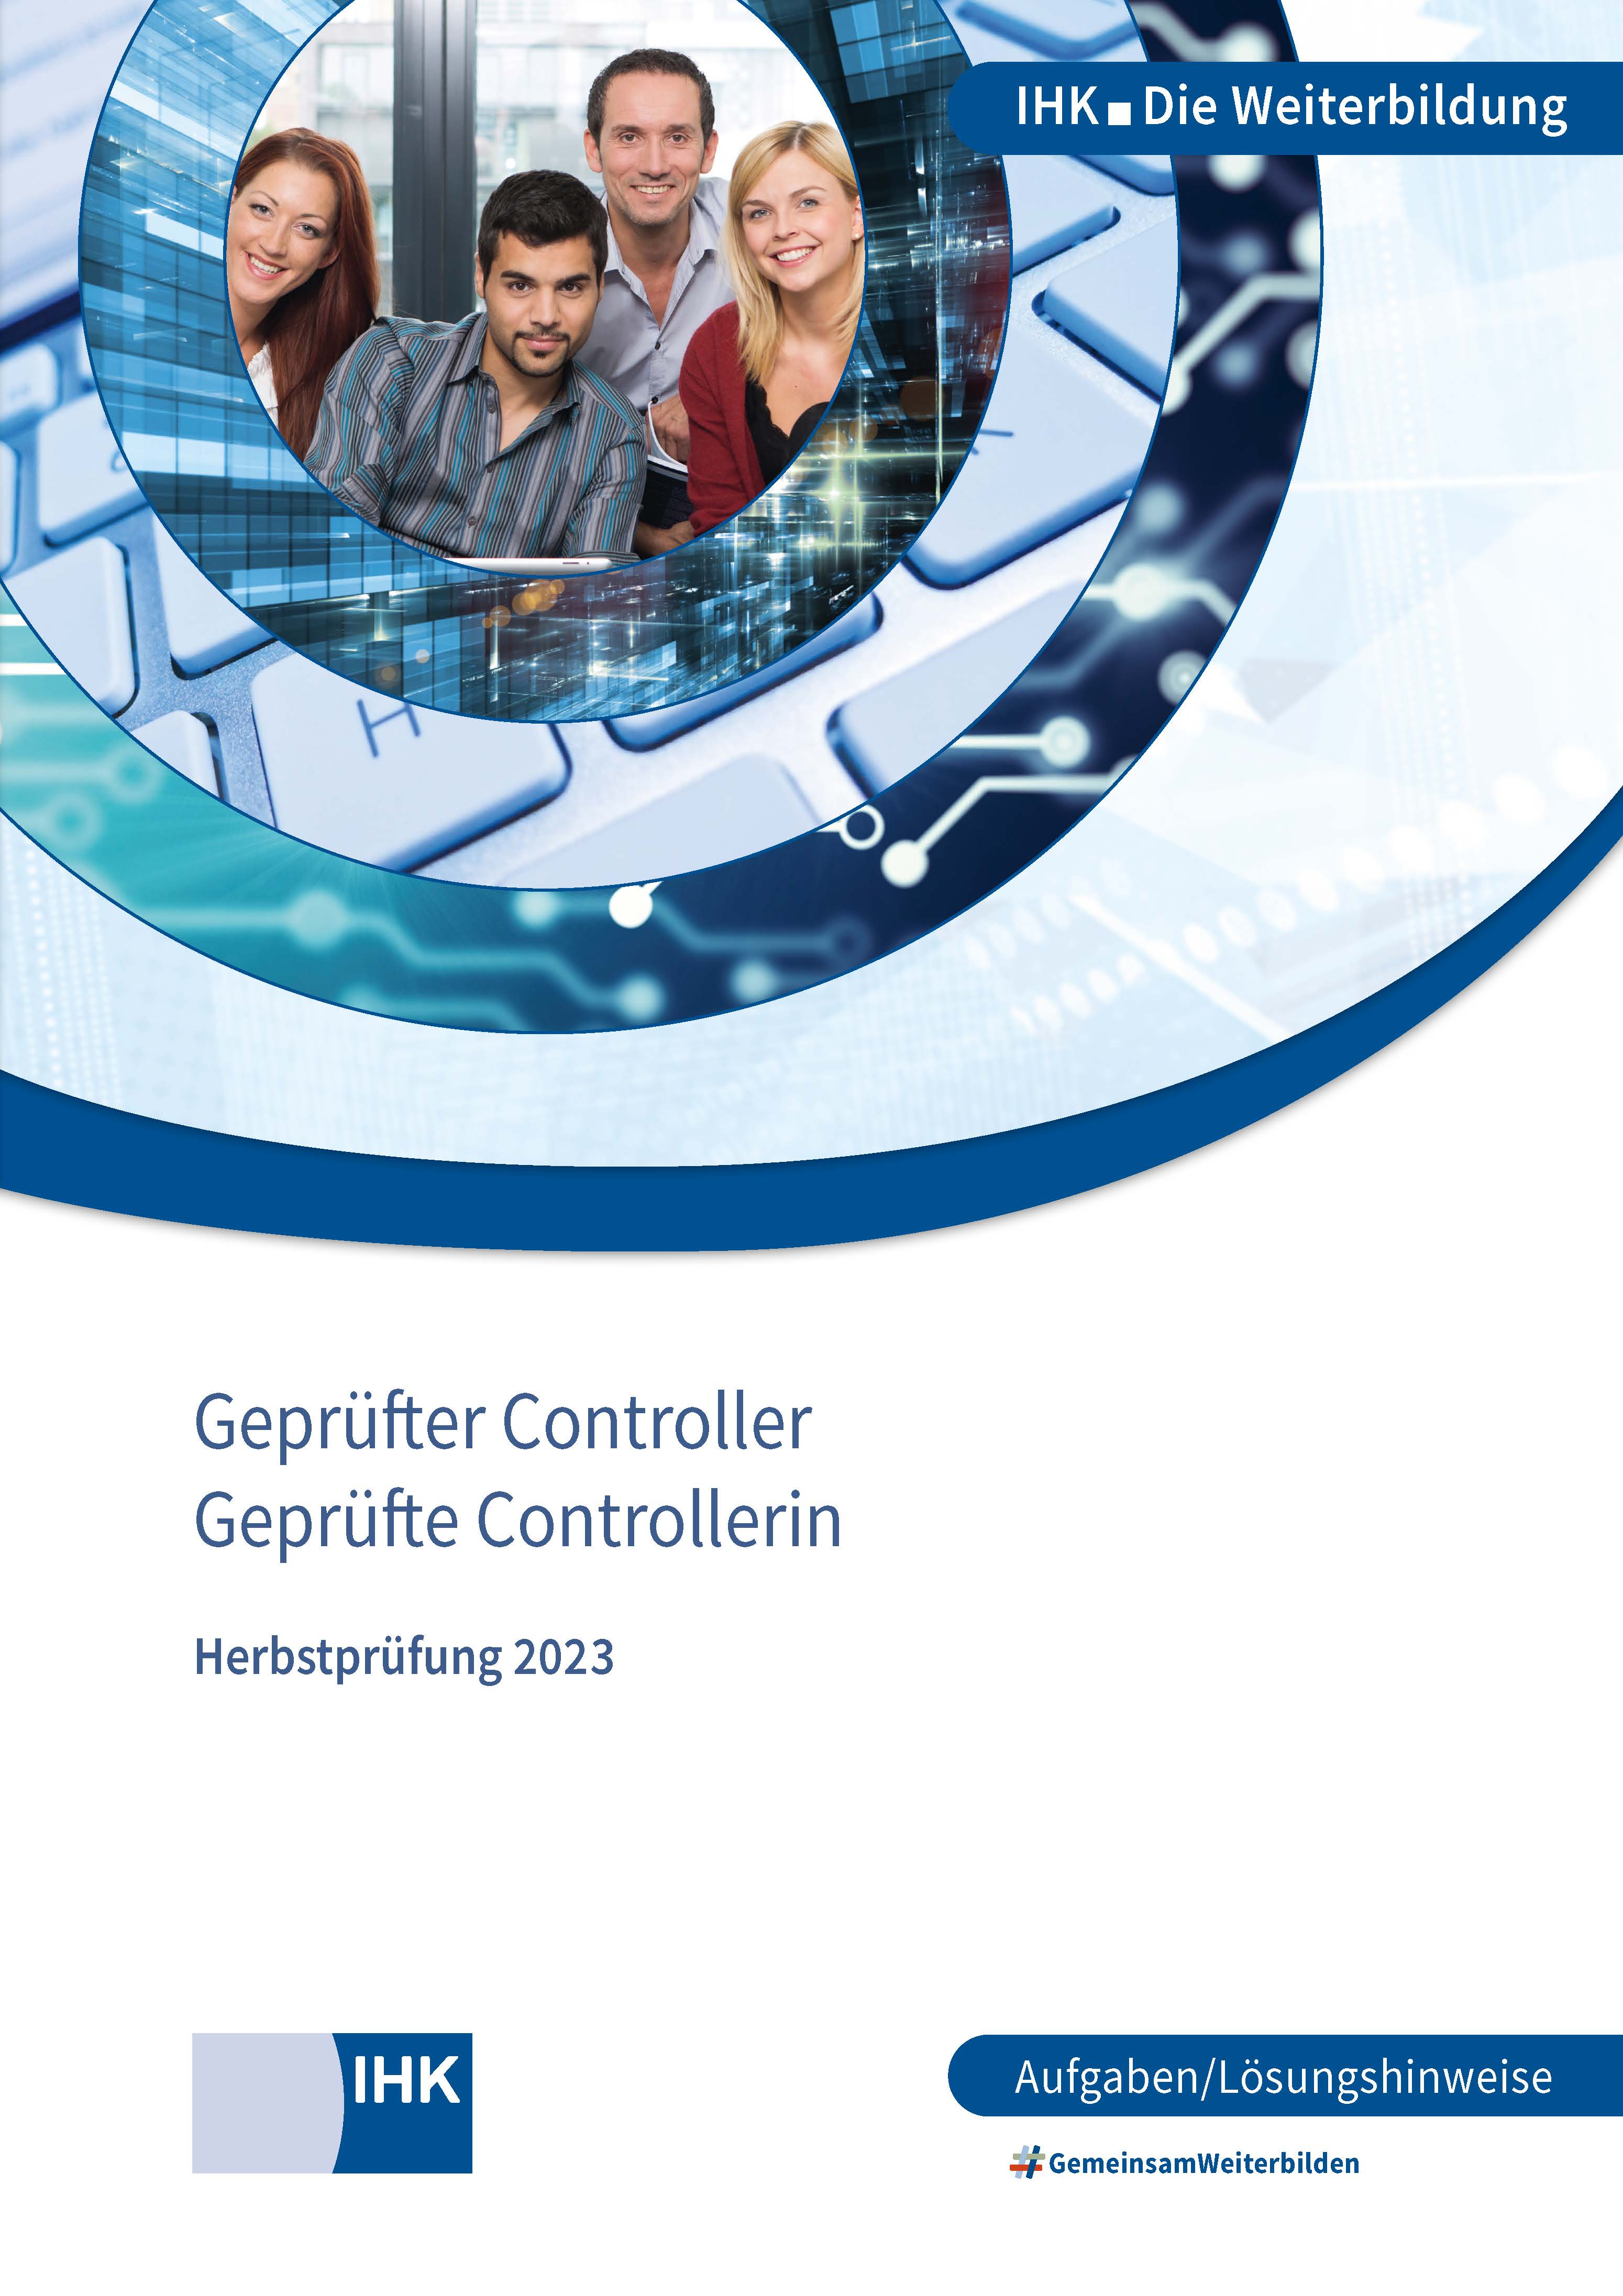 Cover von Geprüfte Controller - Herbstprüfung 2023 (Verordnung 2006)